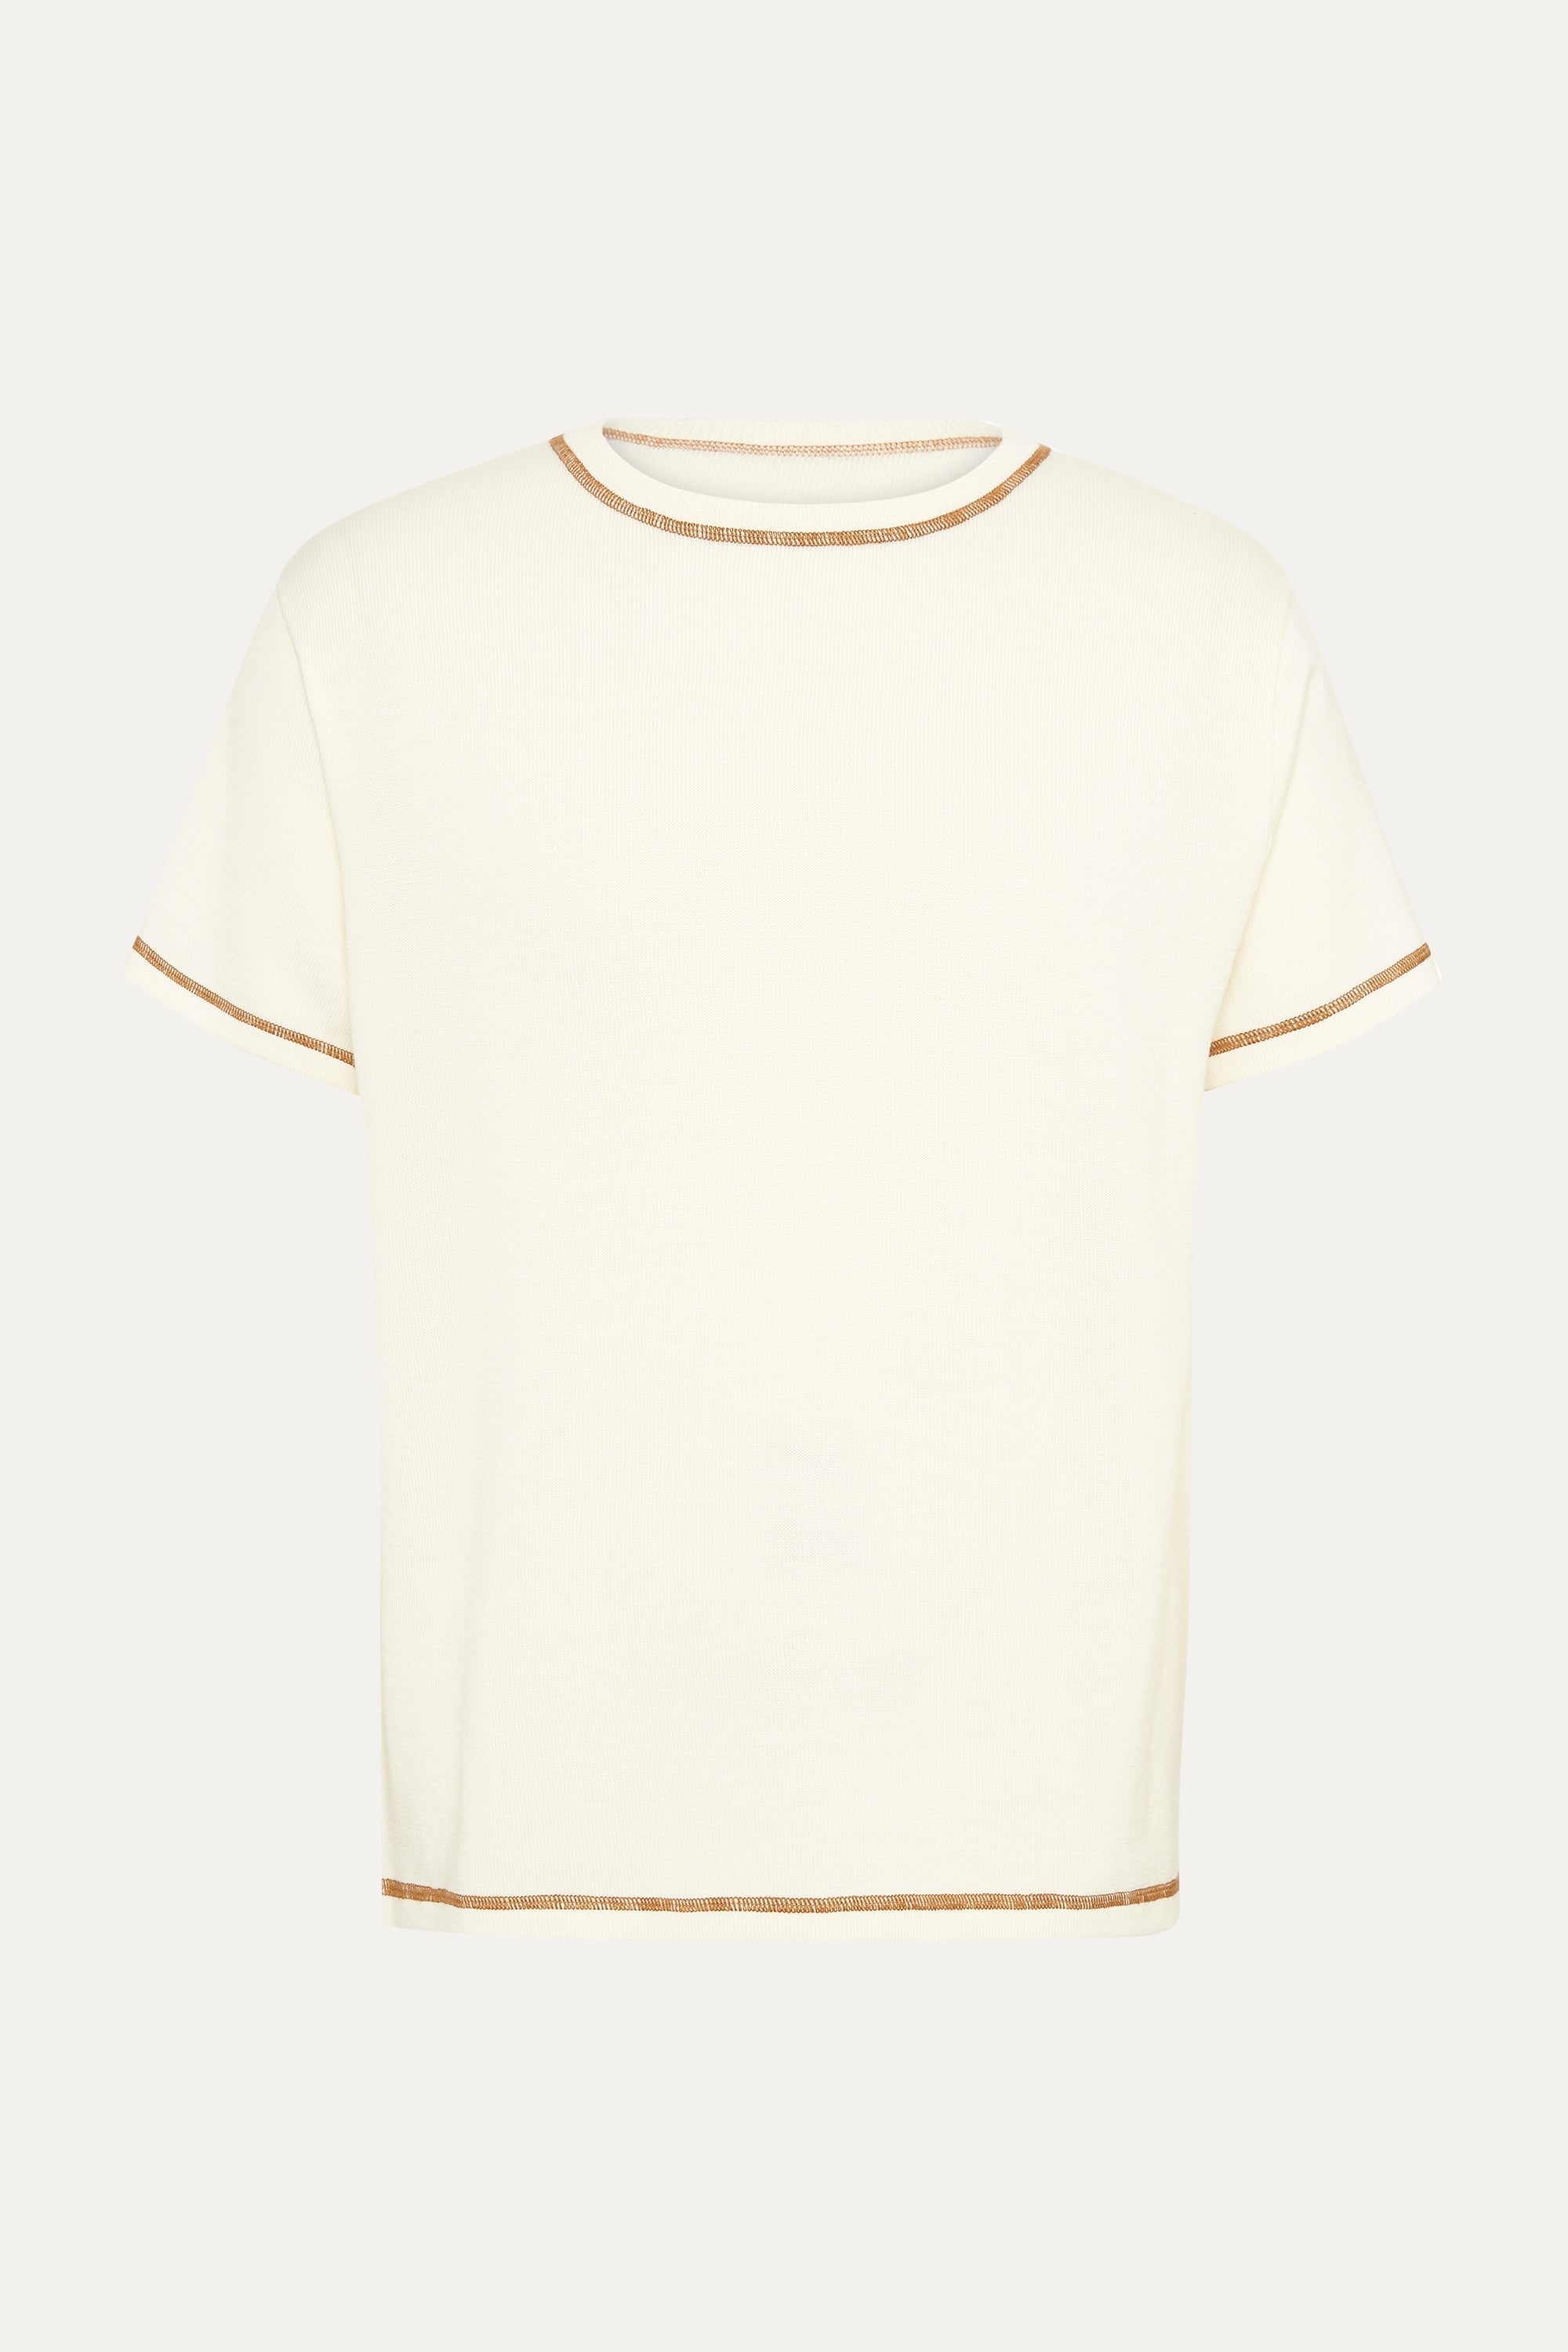 S/S T-Shirt In Creme Merino Wool